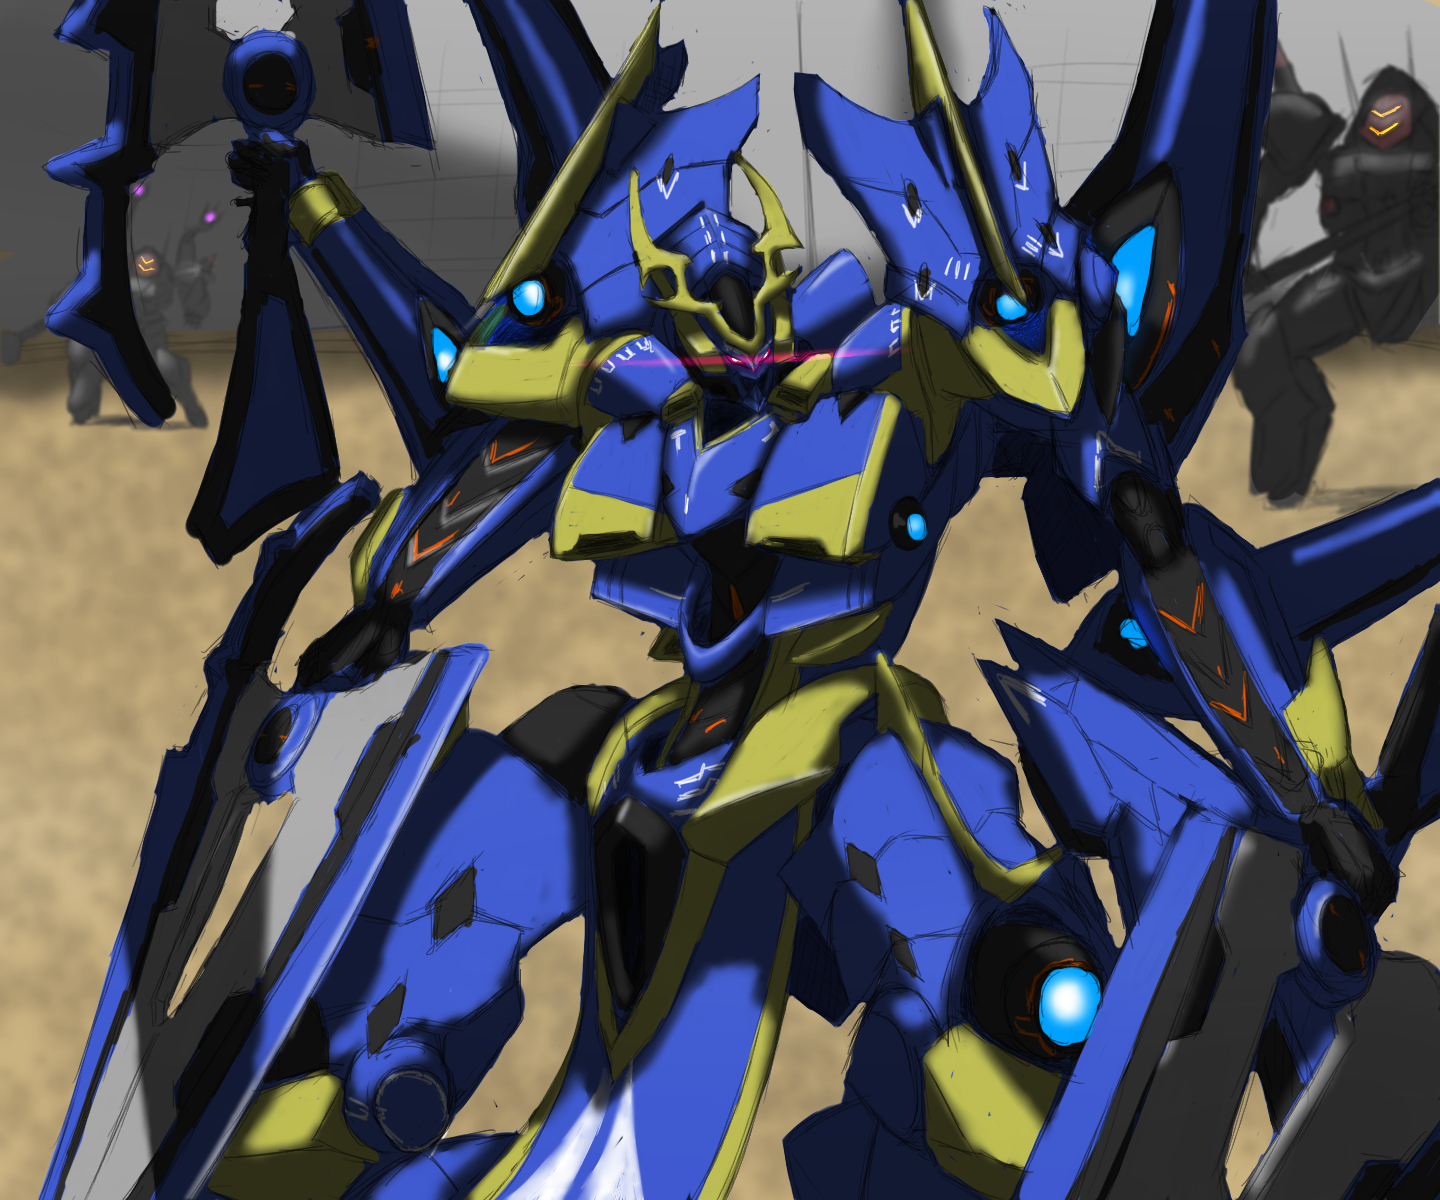 Ikaruga Knights Magic Knights Magic Anime Mech Super Robot Wars Artwork Digital Art Fan Art 1440x1200